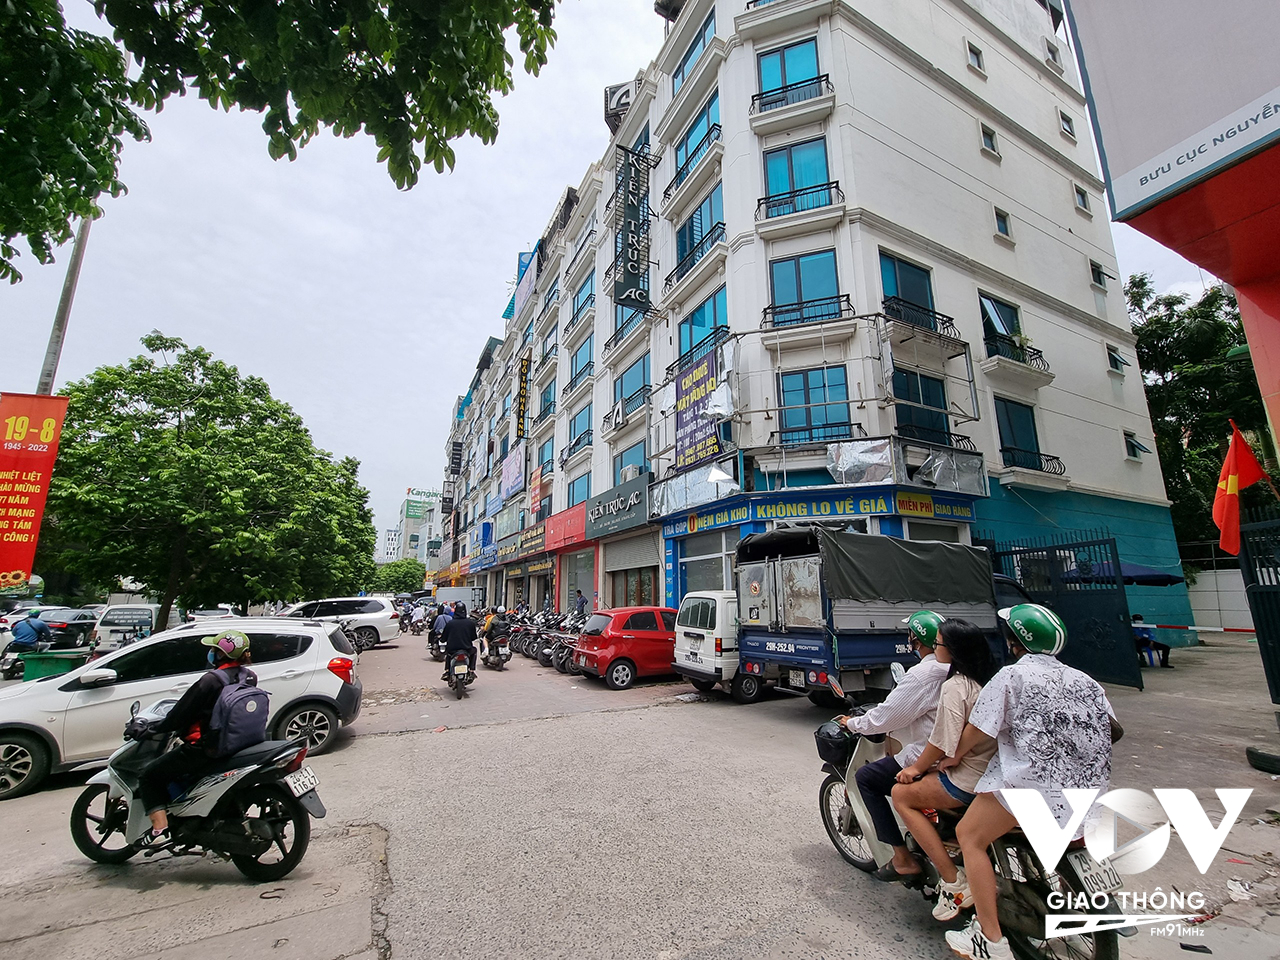 Không thể để xe trong chính ngôi nhà của mình, người dân buộc phải để xe ở mặt đường Nguyễn Xiển vô hình chung làm tăng thêm áp lực giao thông cho tuyến đường này.